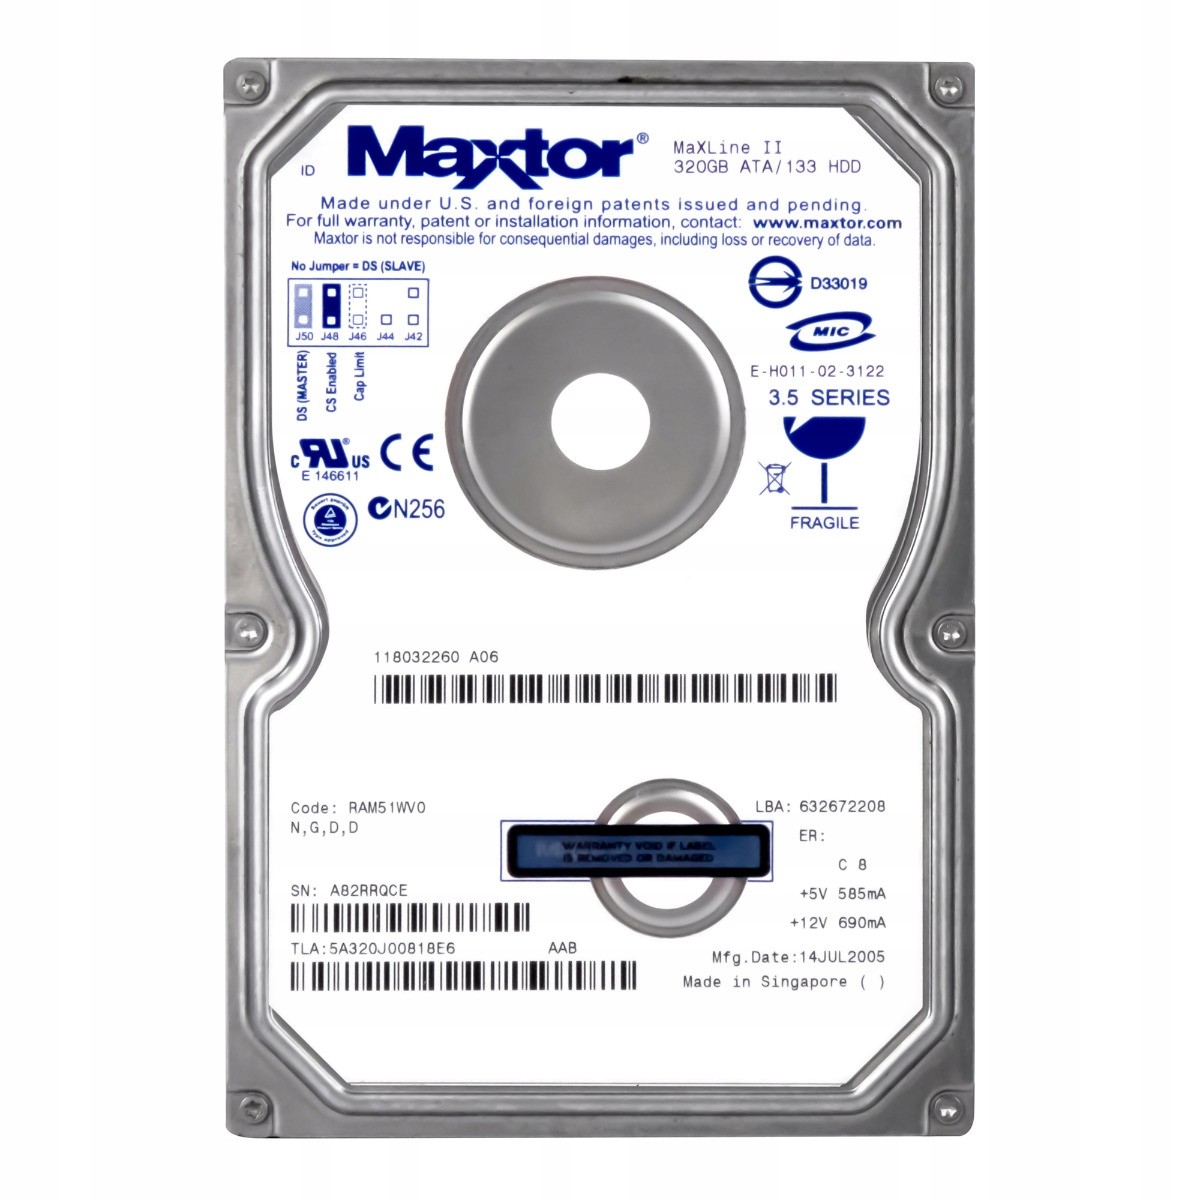 Maxtor MaXLine II 320GB 5.4K 2MB Ata 3.5'' 5A320J0